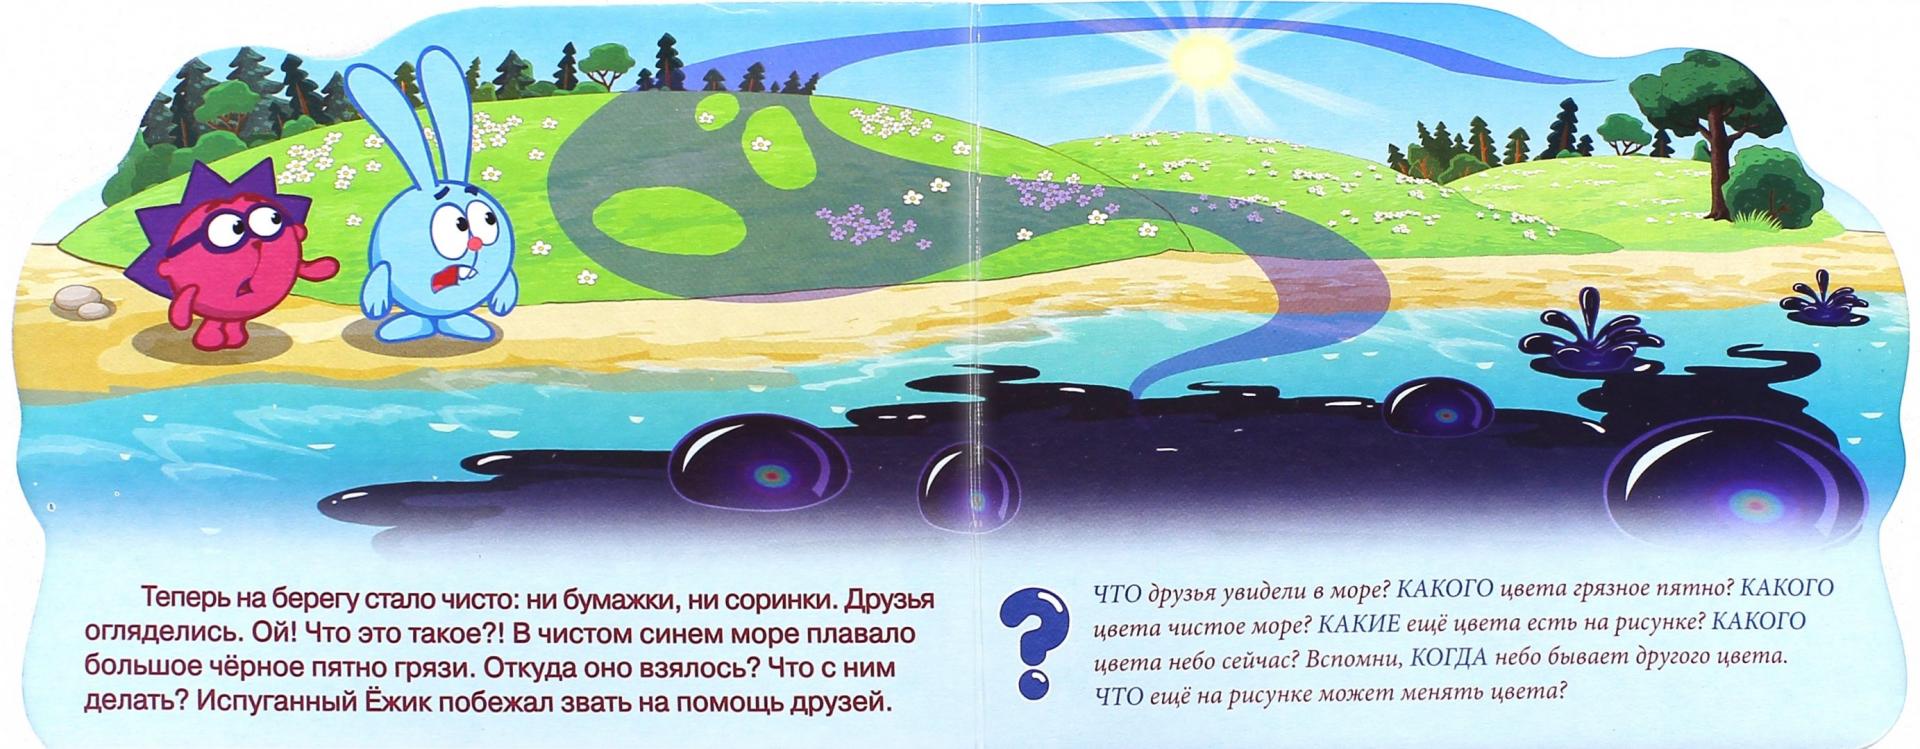 Иллюстрация 1 из 9 для Смешарики. Маленькое море (Ёжик) | Лабиринт - книги. Источник: Лабиринт